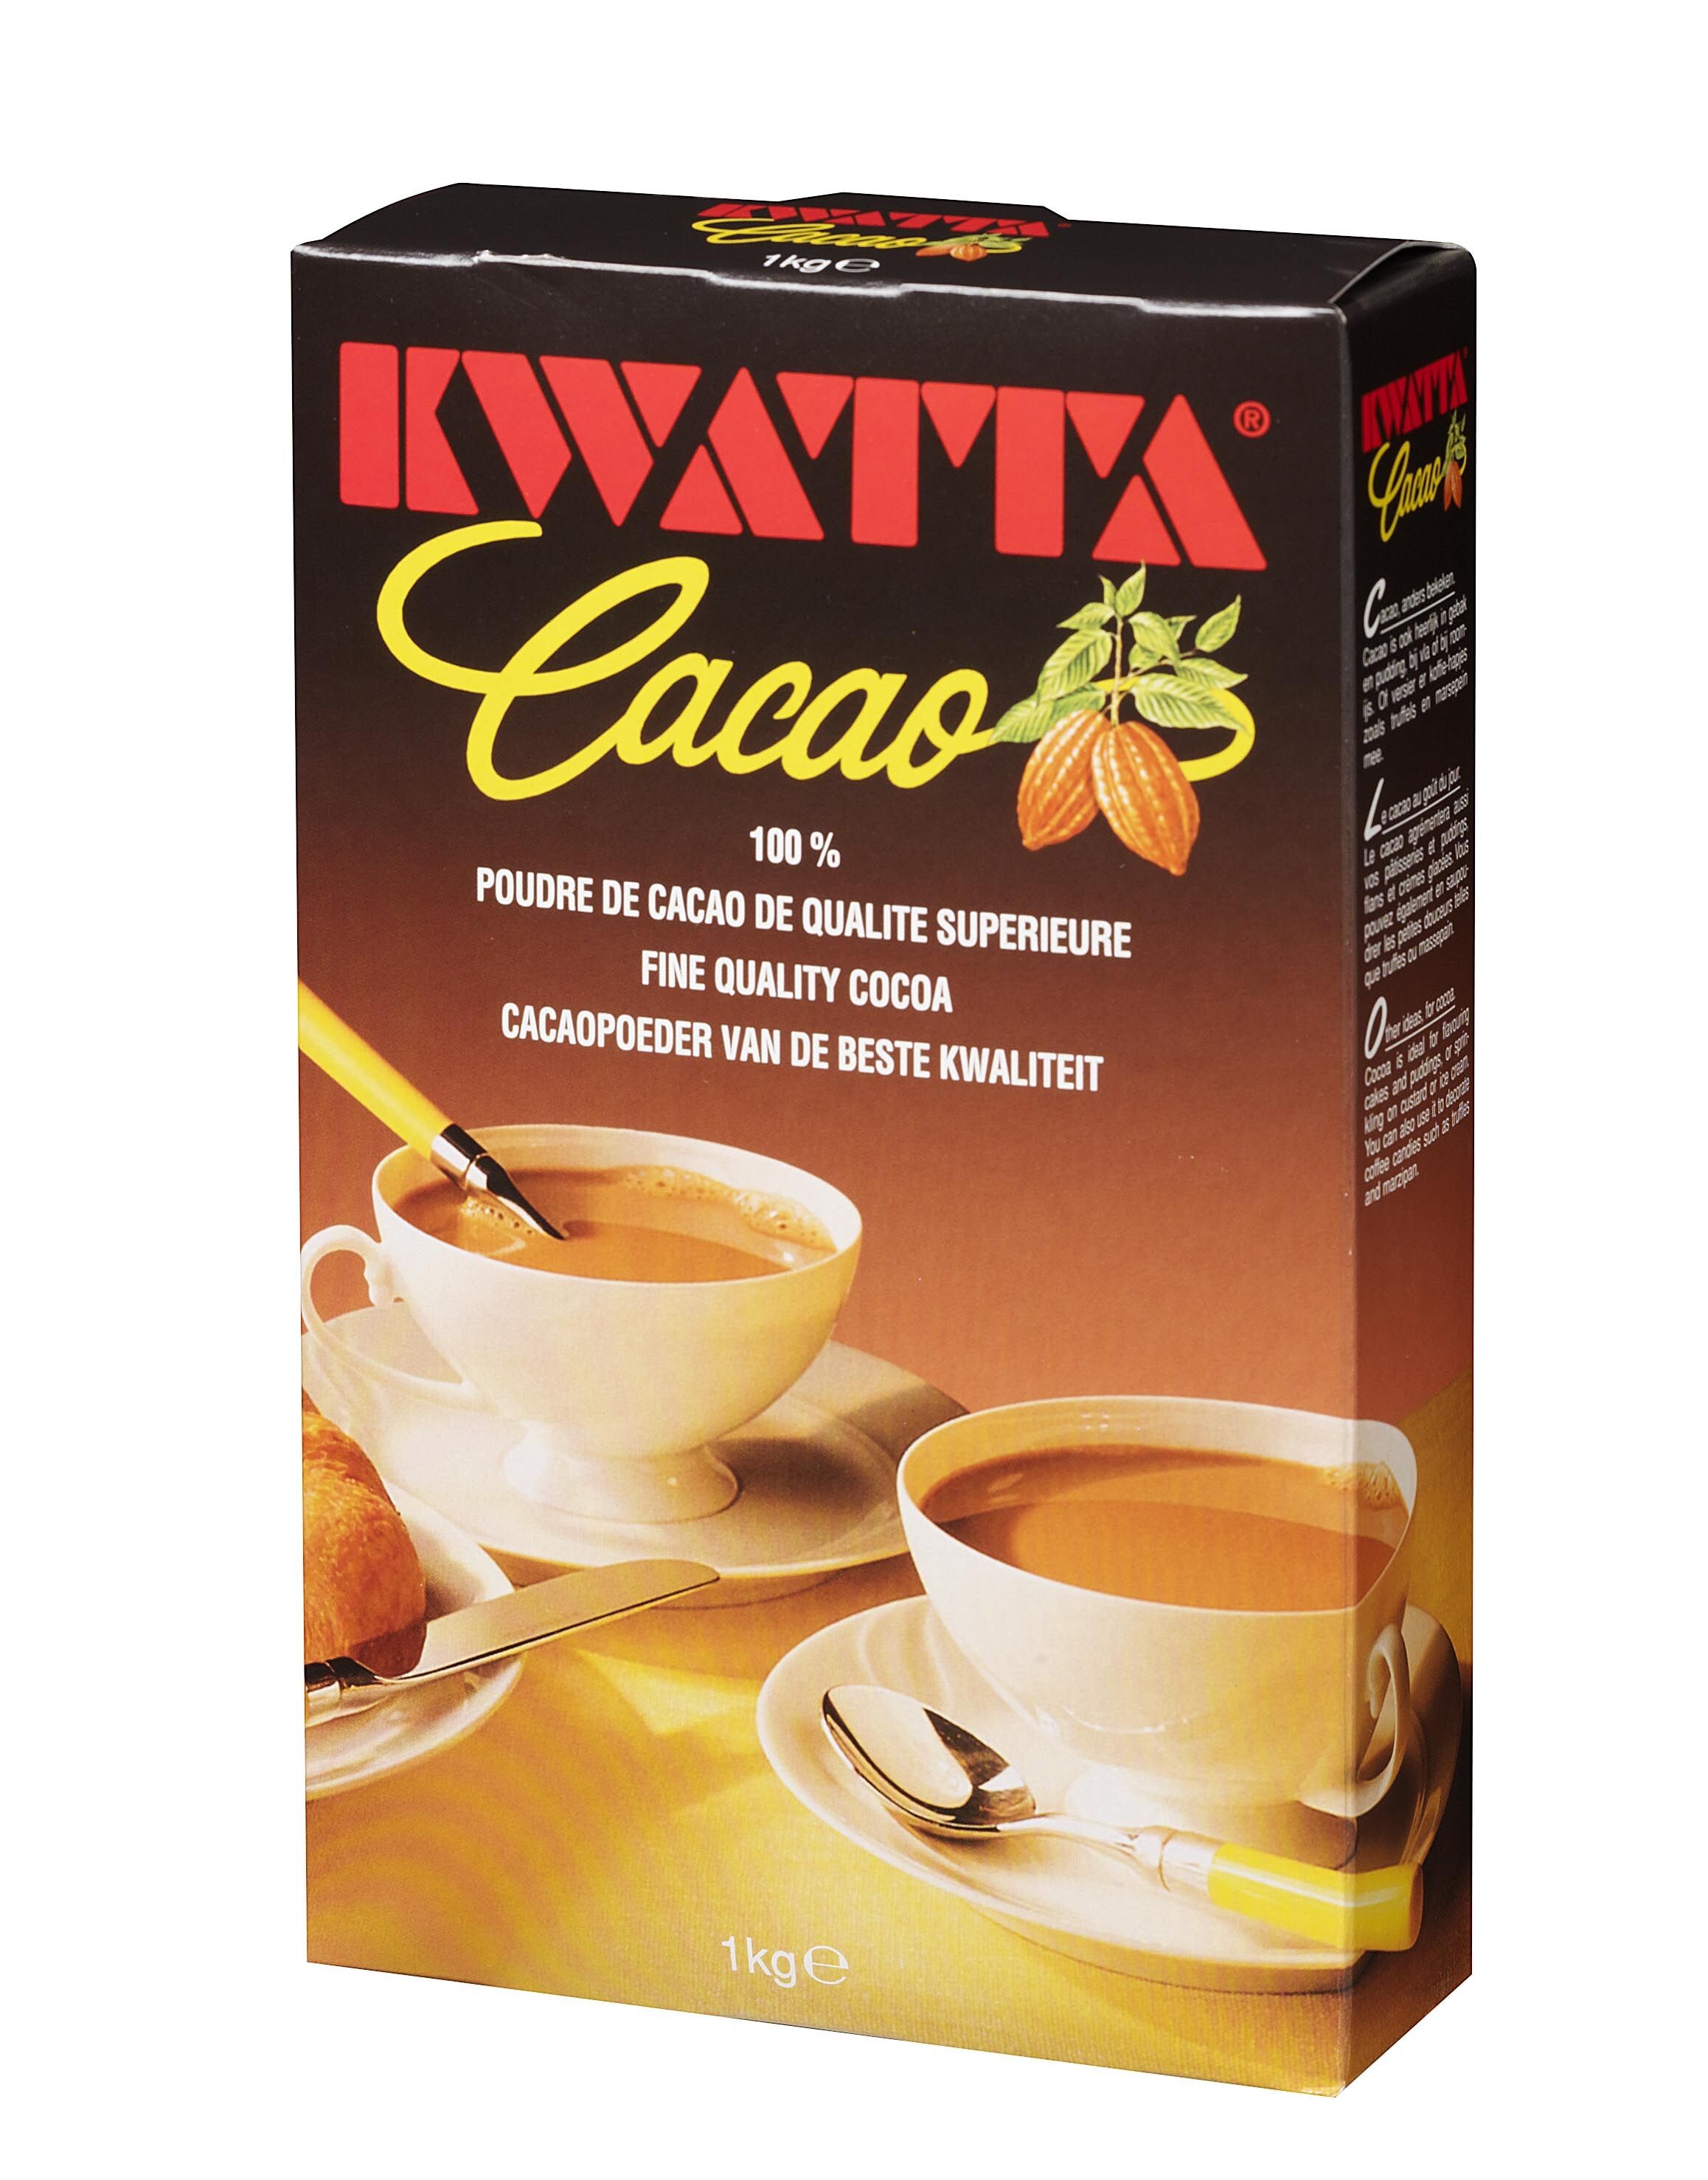 Kwatta cocoa powder 1kg